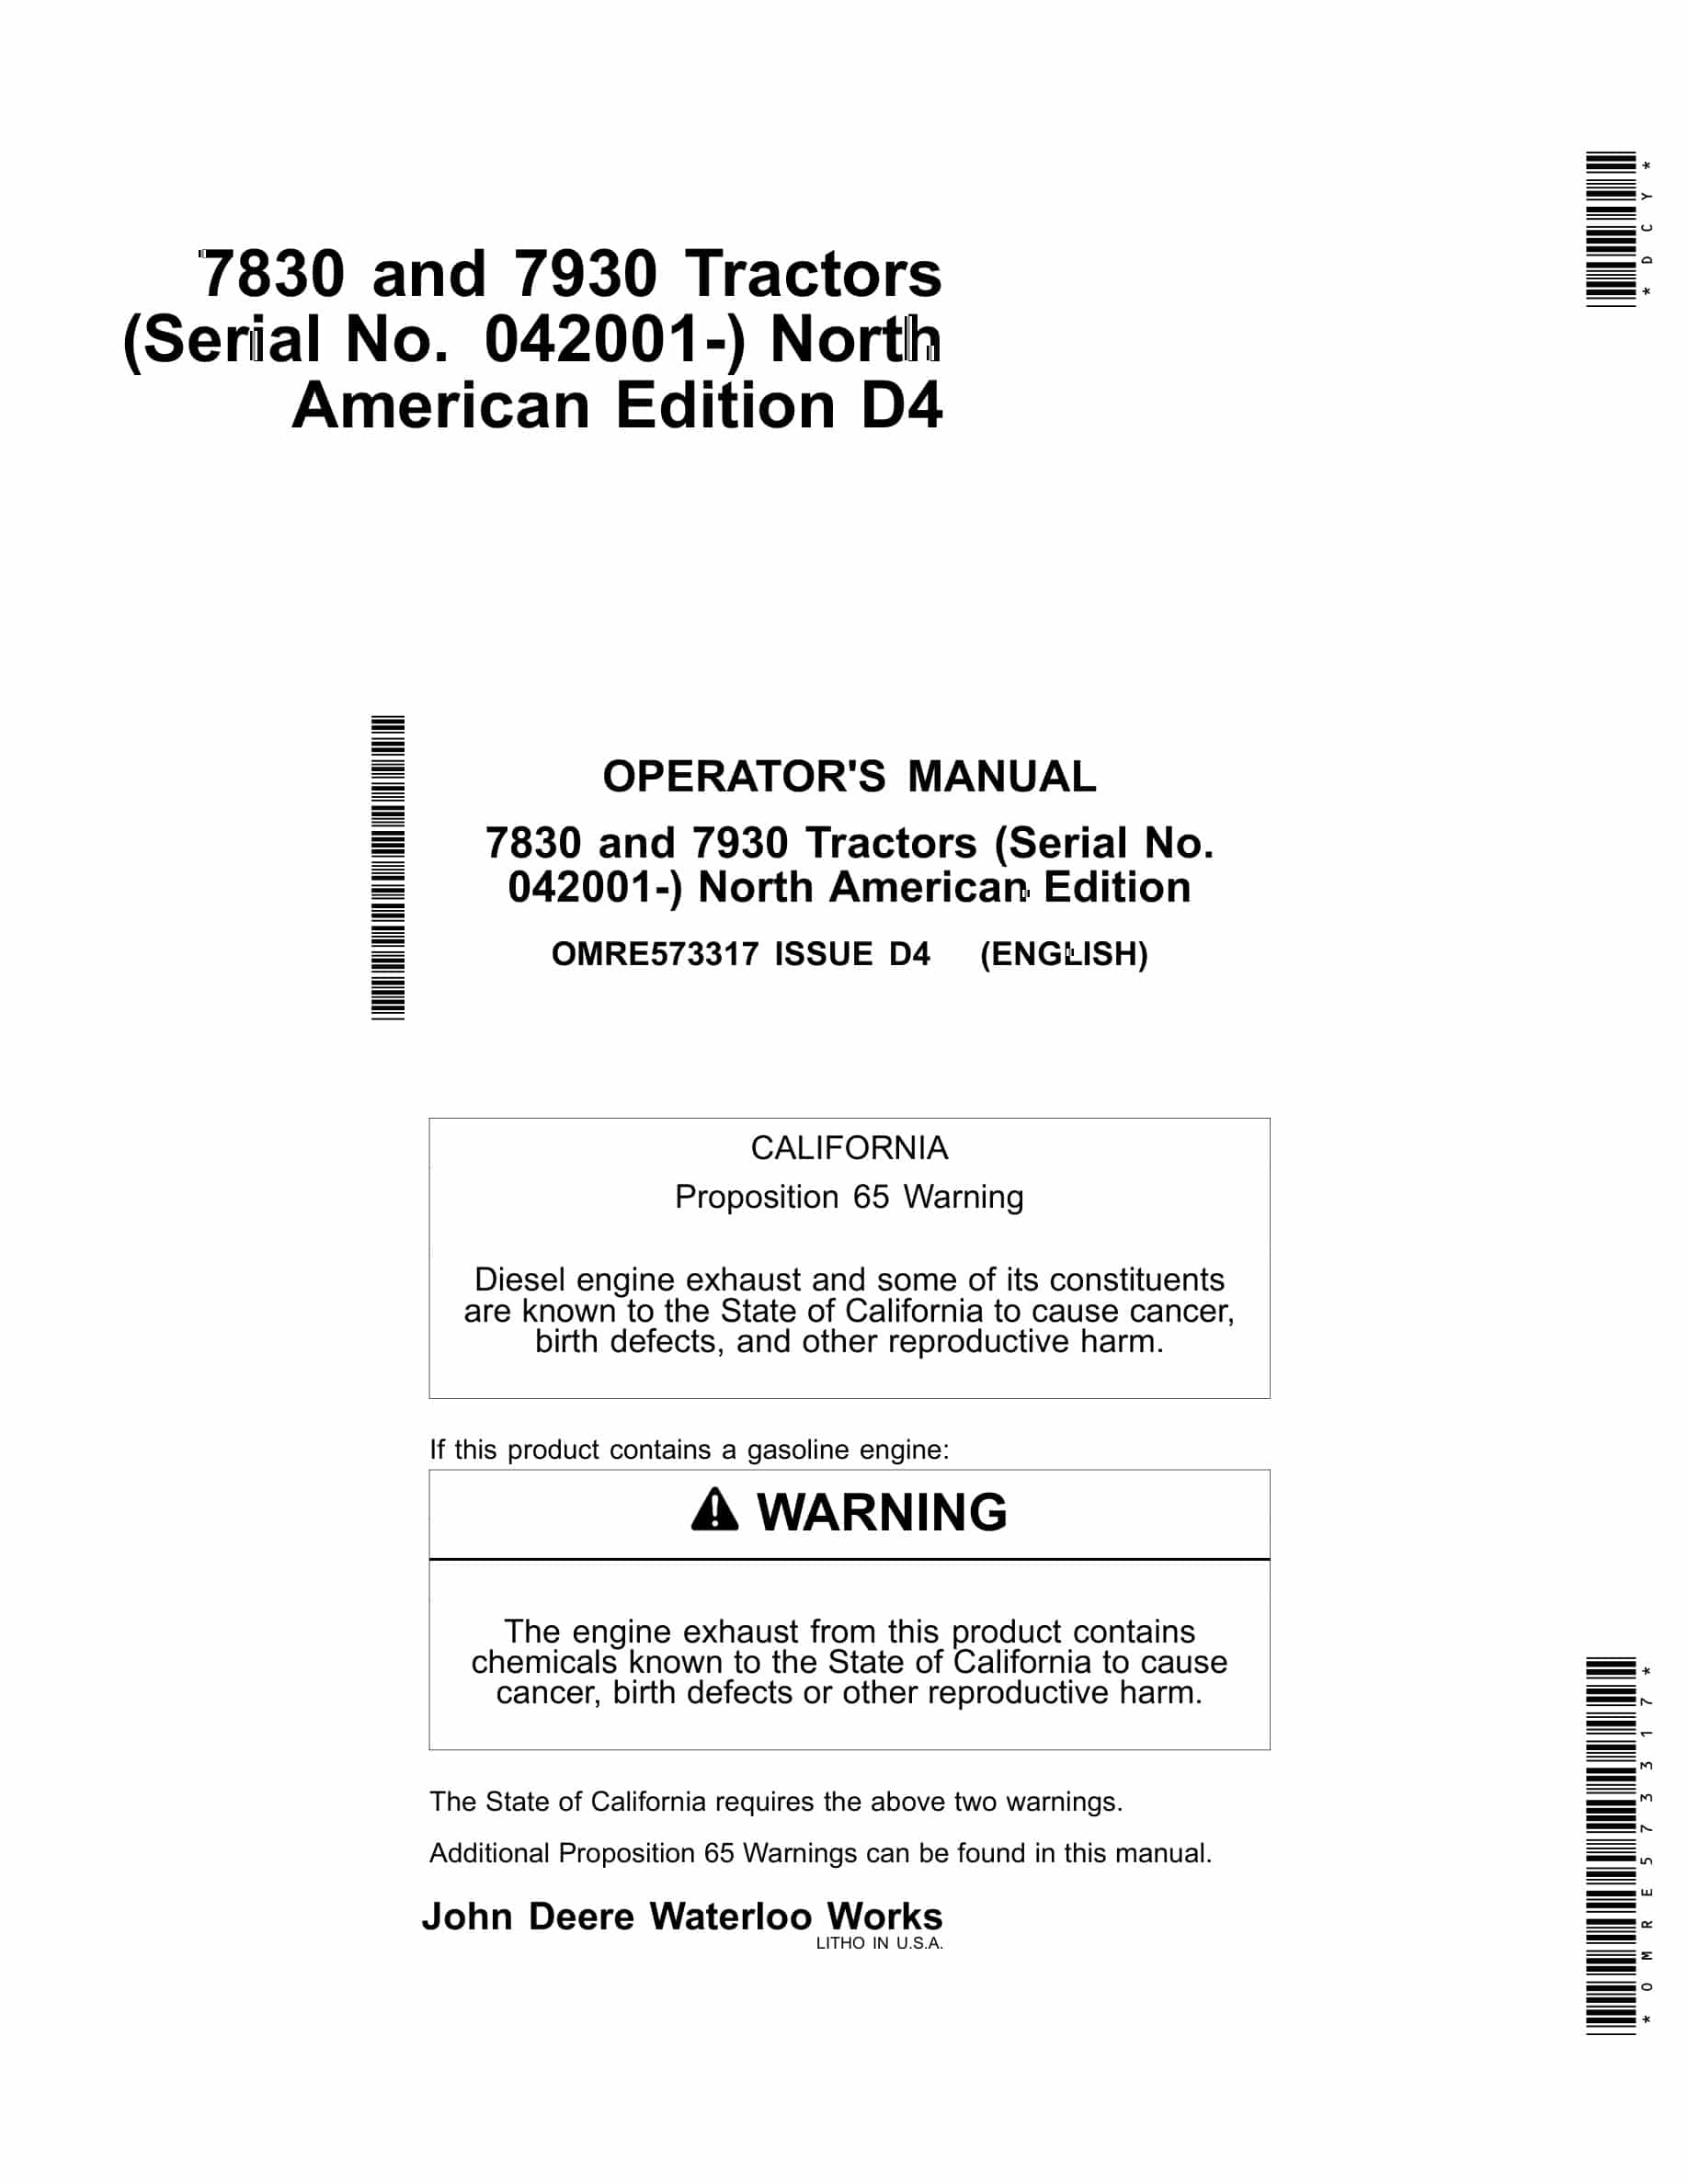 John Deere 7830 and 7930 Tractor Operator Manual OMRE573317-1